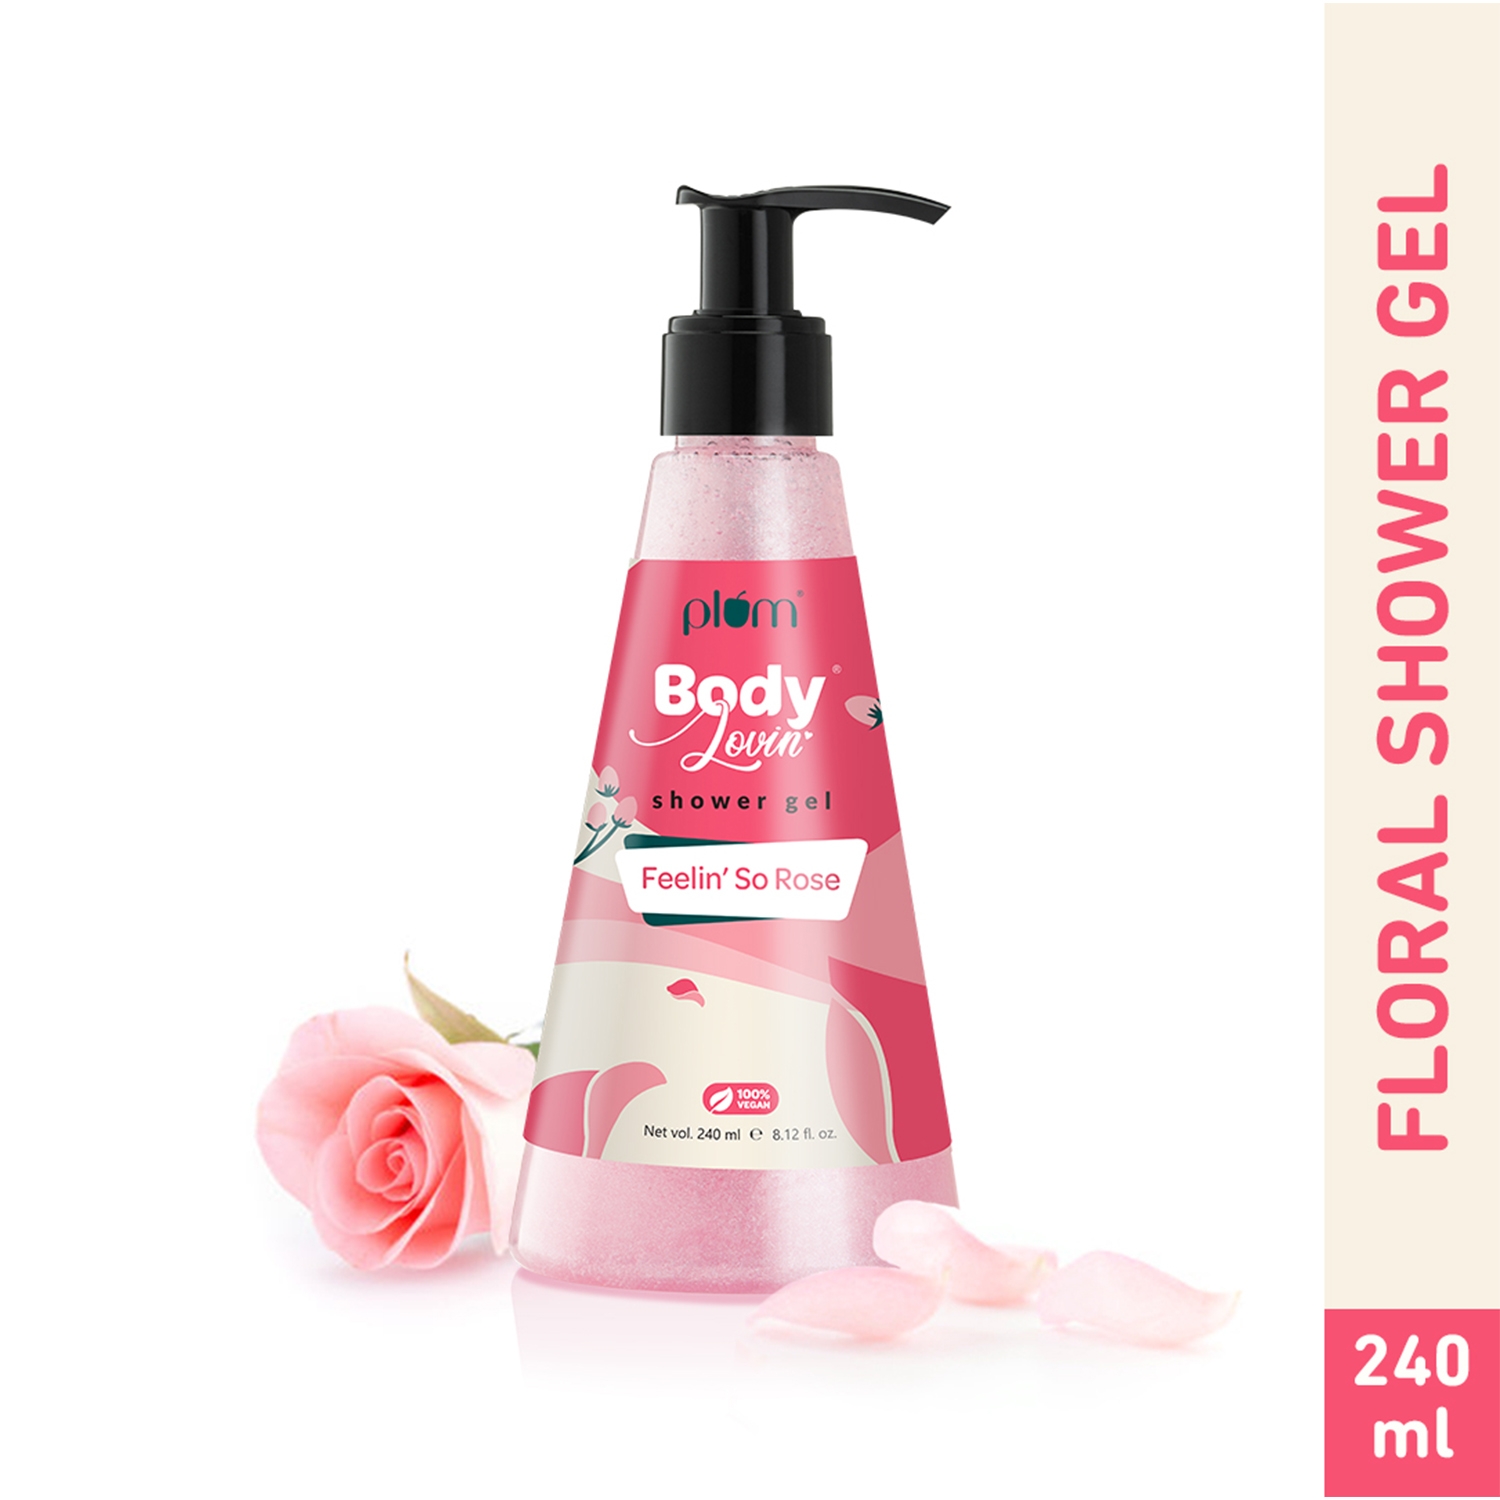 Plum Bodylovin Feelin So Rose Shower Gel - (240ml)